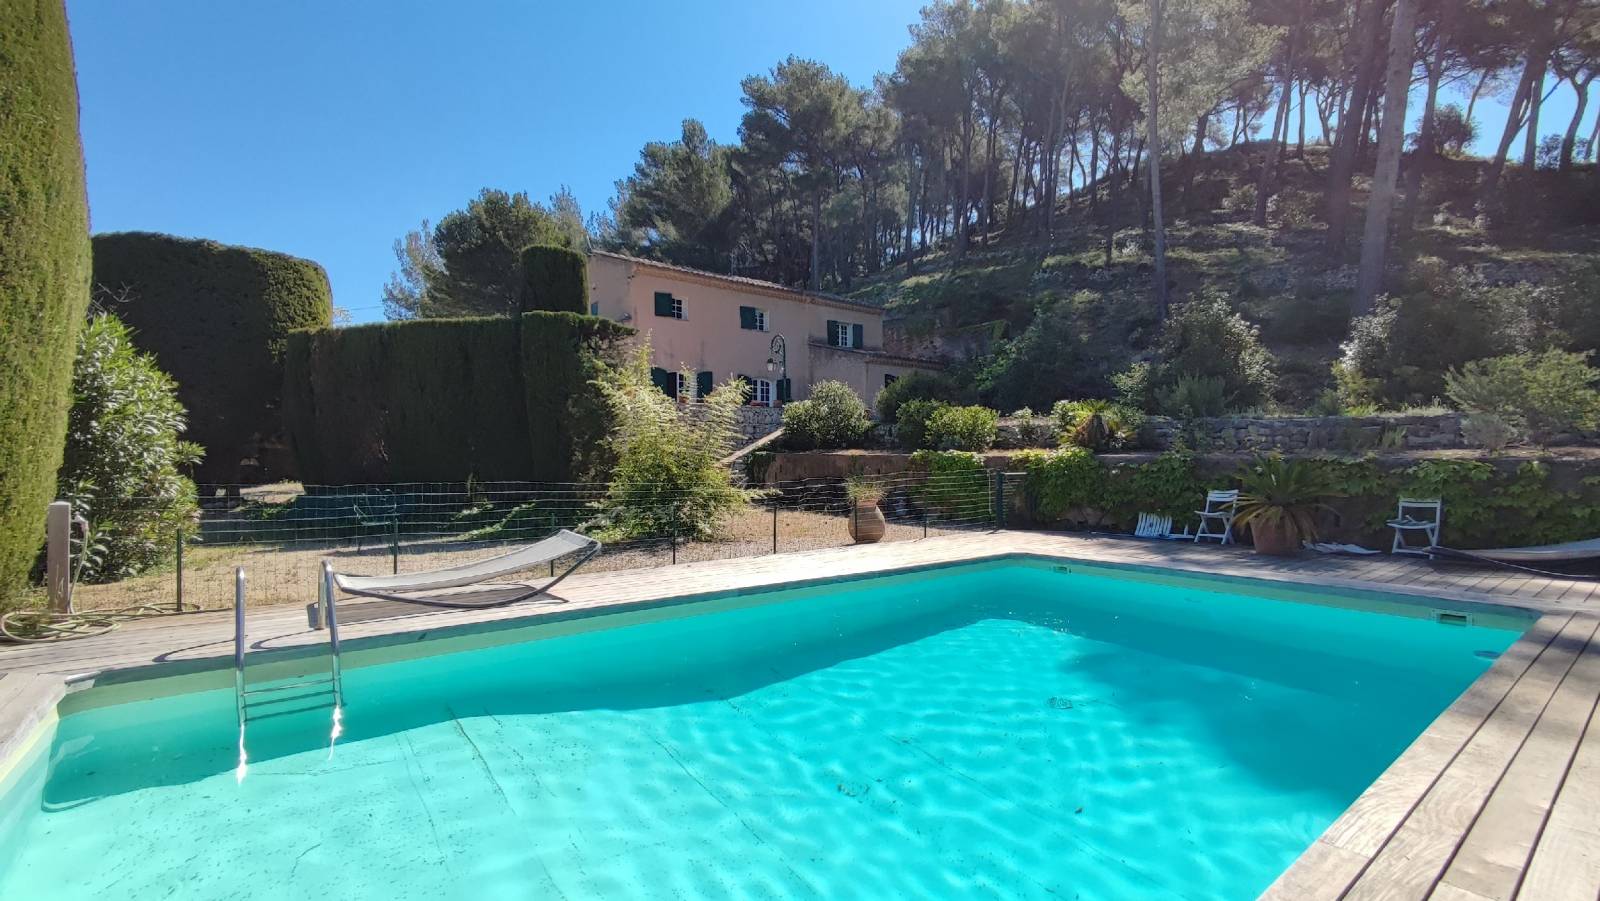 A vendre mas provençal   dans les vignes avec piscine, garage et vue exceptionnelle